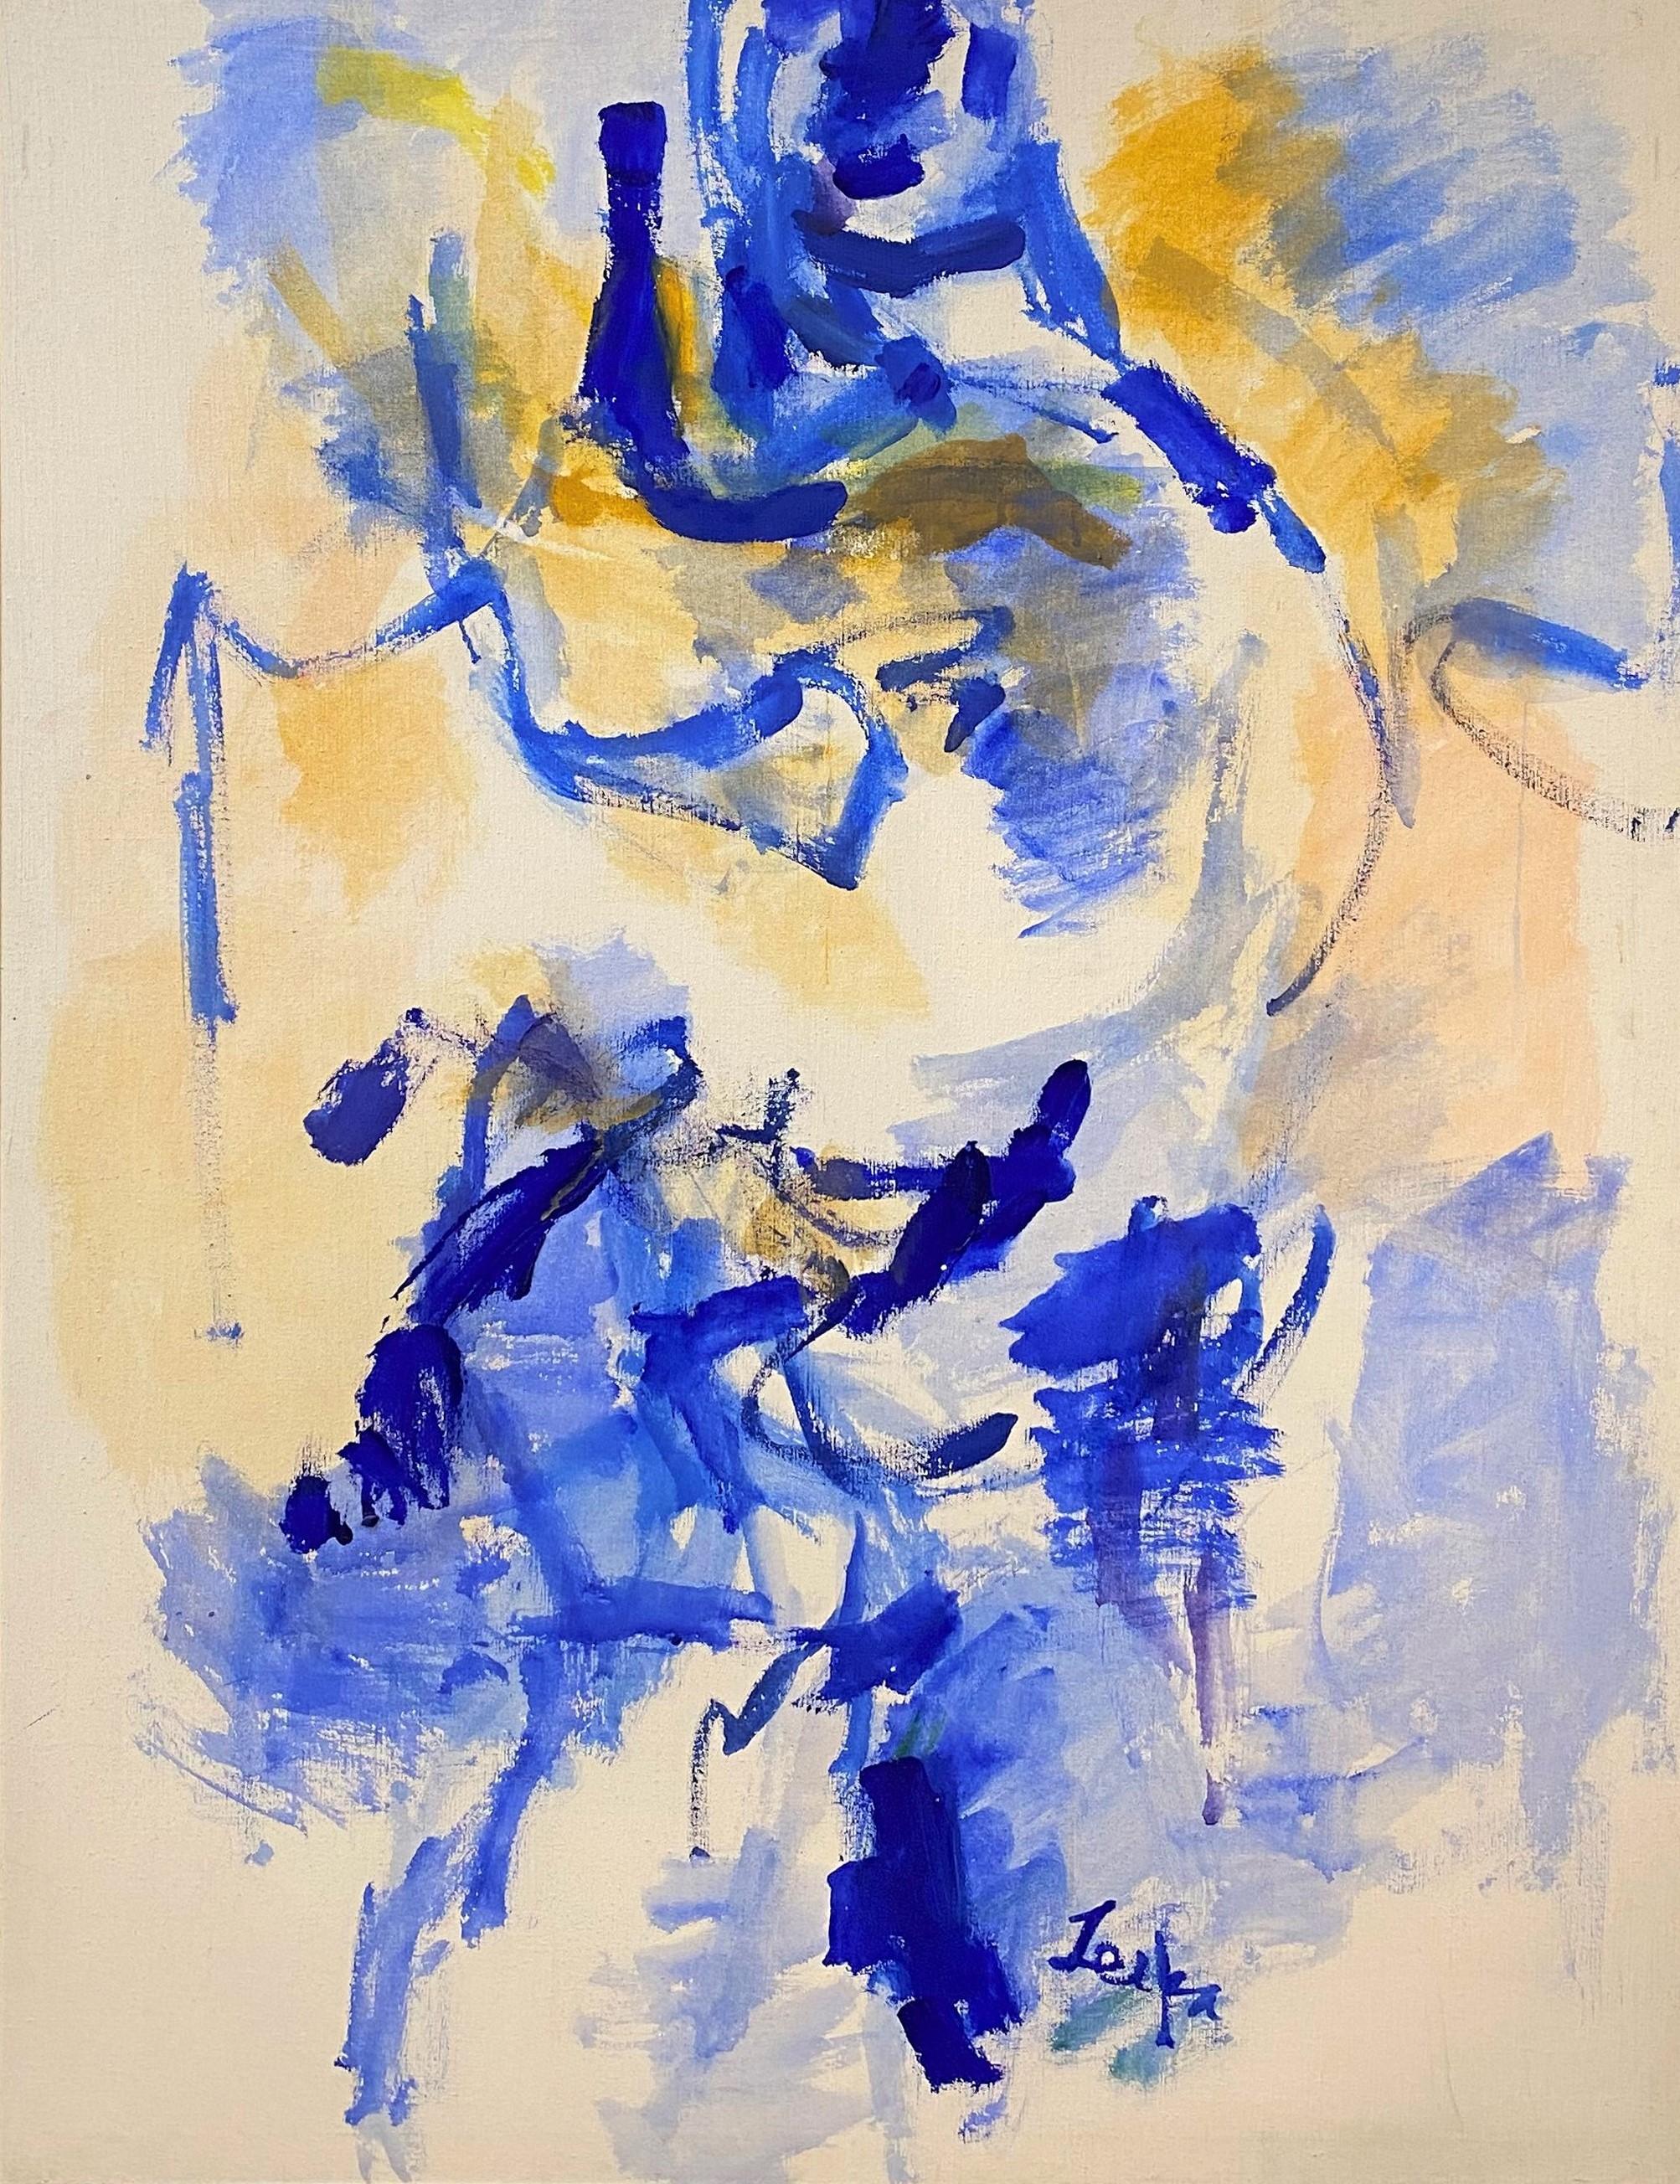 Une belle peinture à l'huile abstraite sur toile dans les tons bleus et jaunes, signée de manière illisible en bas à droite, et logée dans un simple cadre moderne chromé. Il date probablement des années 1970. Dimensions : 47 po H x 35 po L, réelles